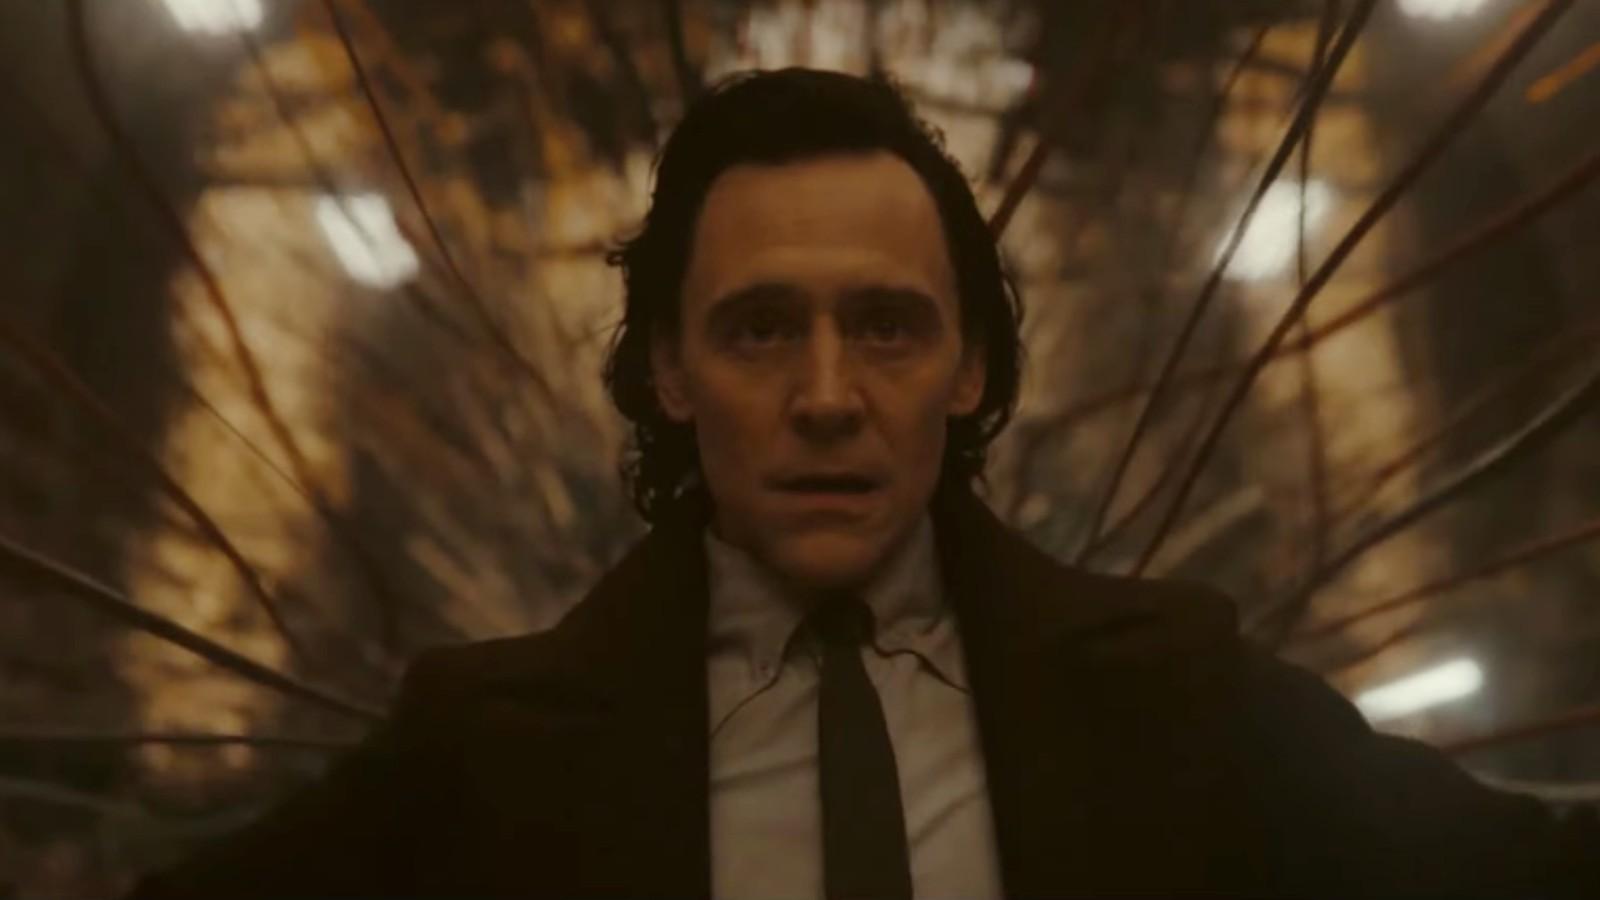 How Loki Season 2's Ending Sets Up Deadpool 3 & Avengers 5